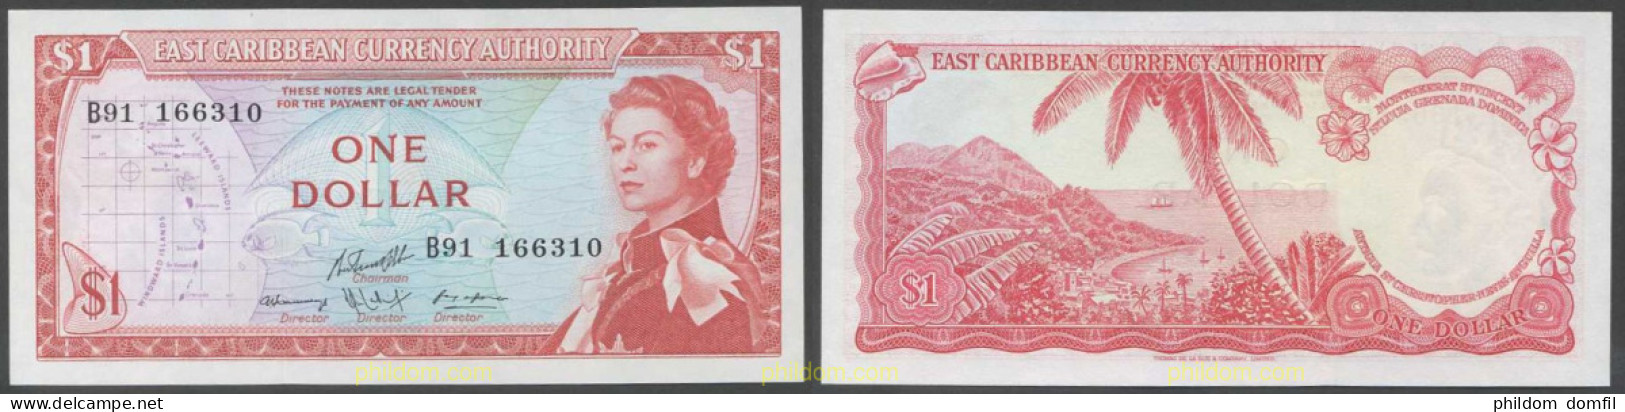 5335 GRAN BRETAÑA 1965 EASTERN CARIBBEAN 1 DOLLAR 1965 - Collections